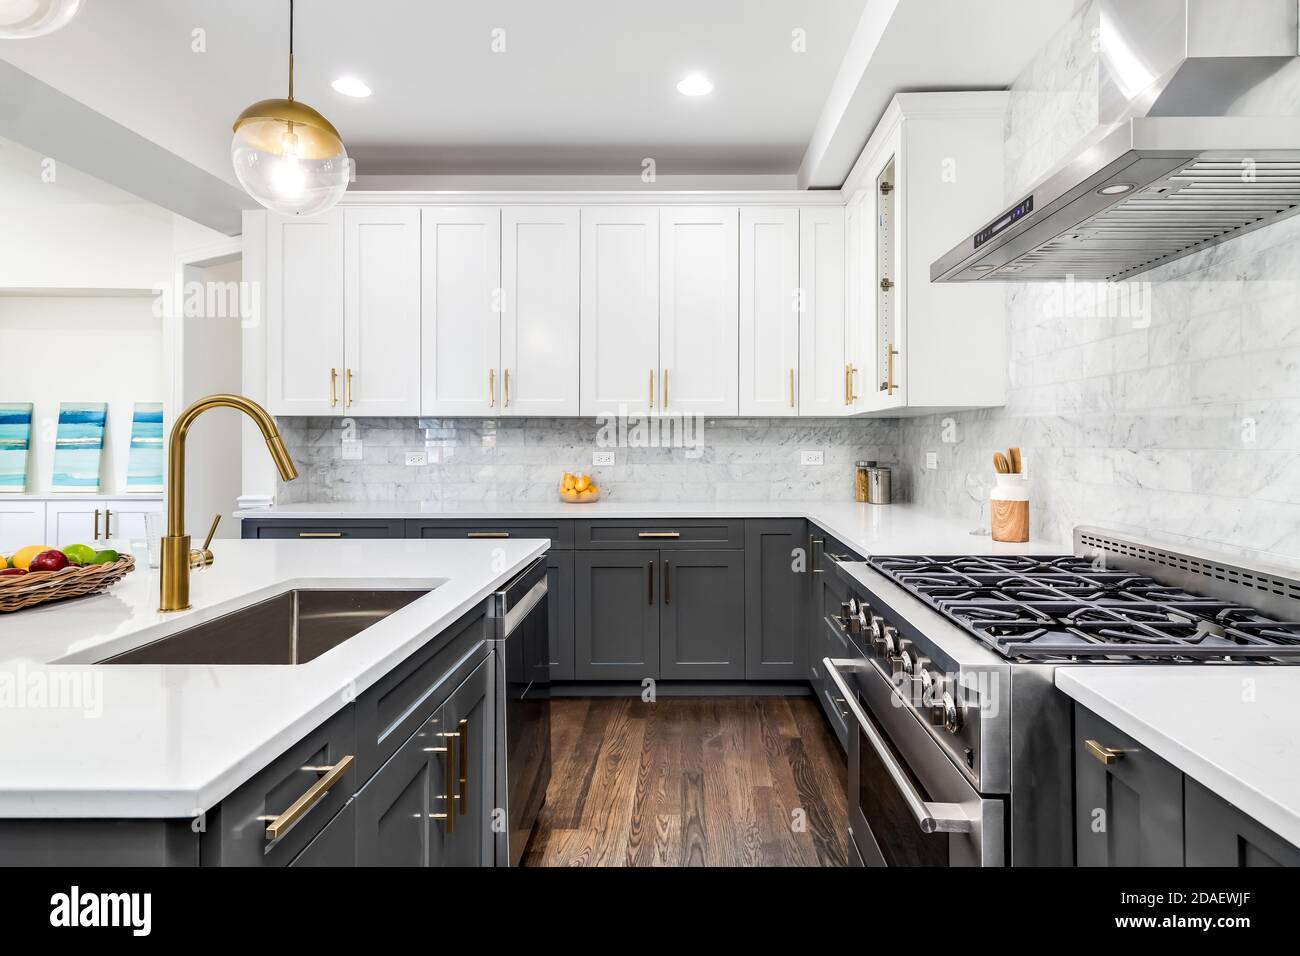 Una lussuosa cucina bianca e grigia con ferramenta dorata, elettrodomestici  in acciaio inossidabile Bosch e Samsung e ripiani in granito marmorizzato  bianco Foto stock - Alamy